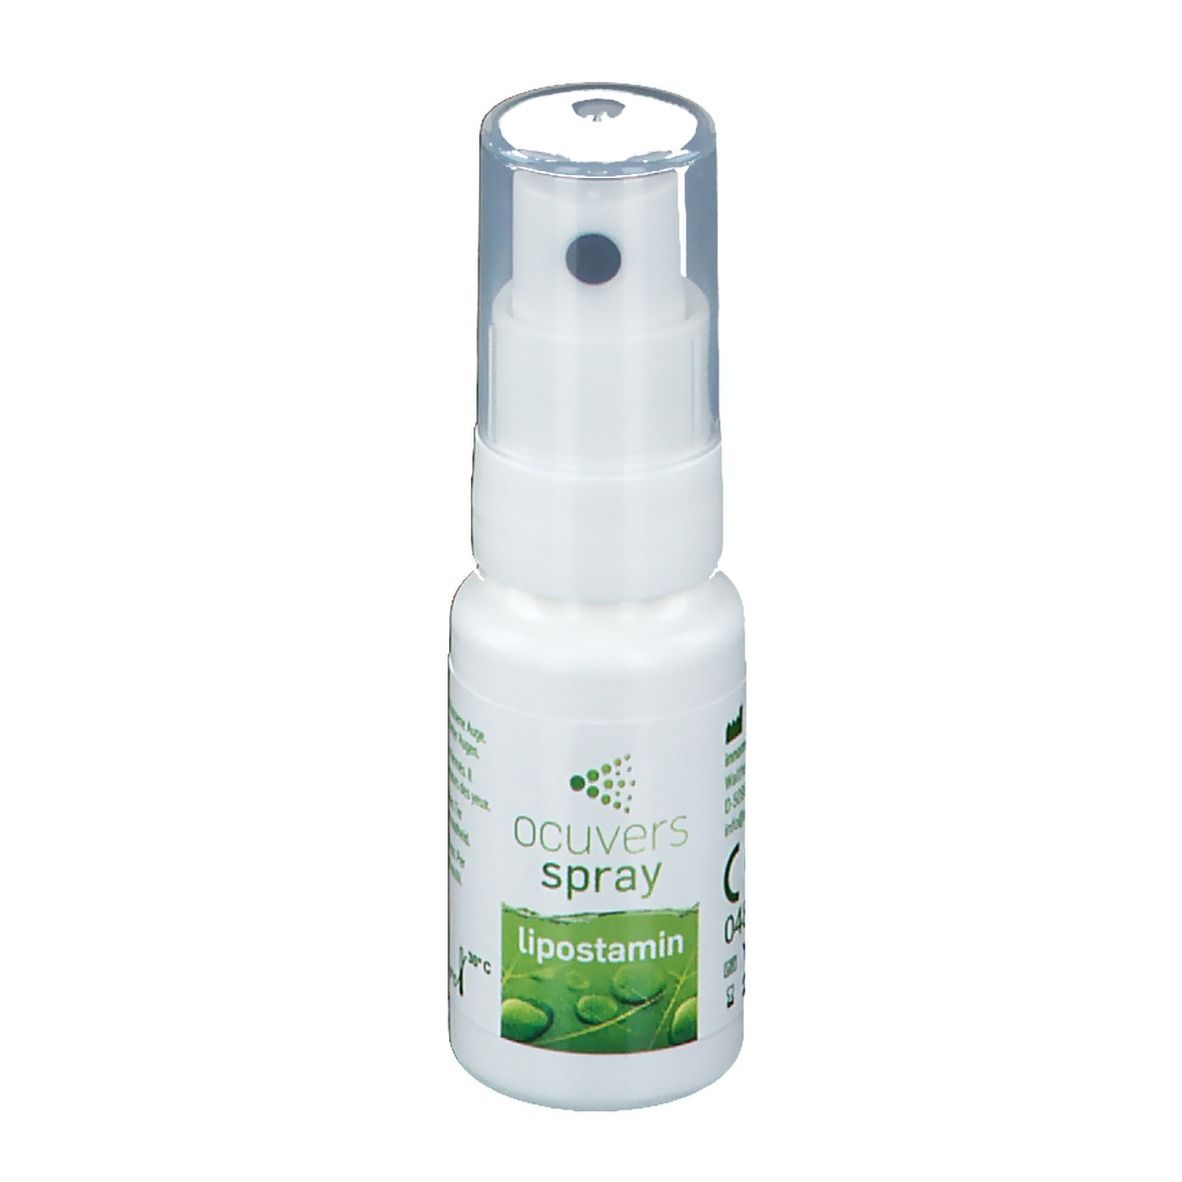 ocuvers spray lipostamin Augenspray